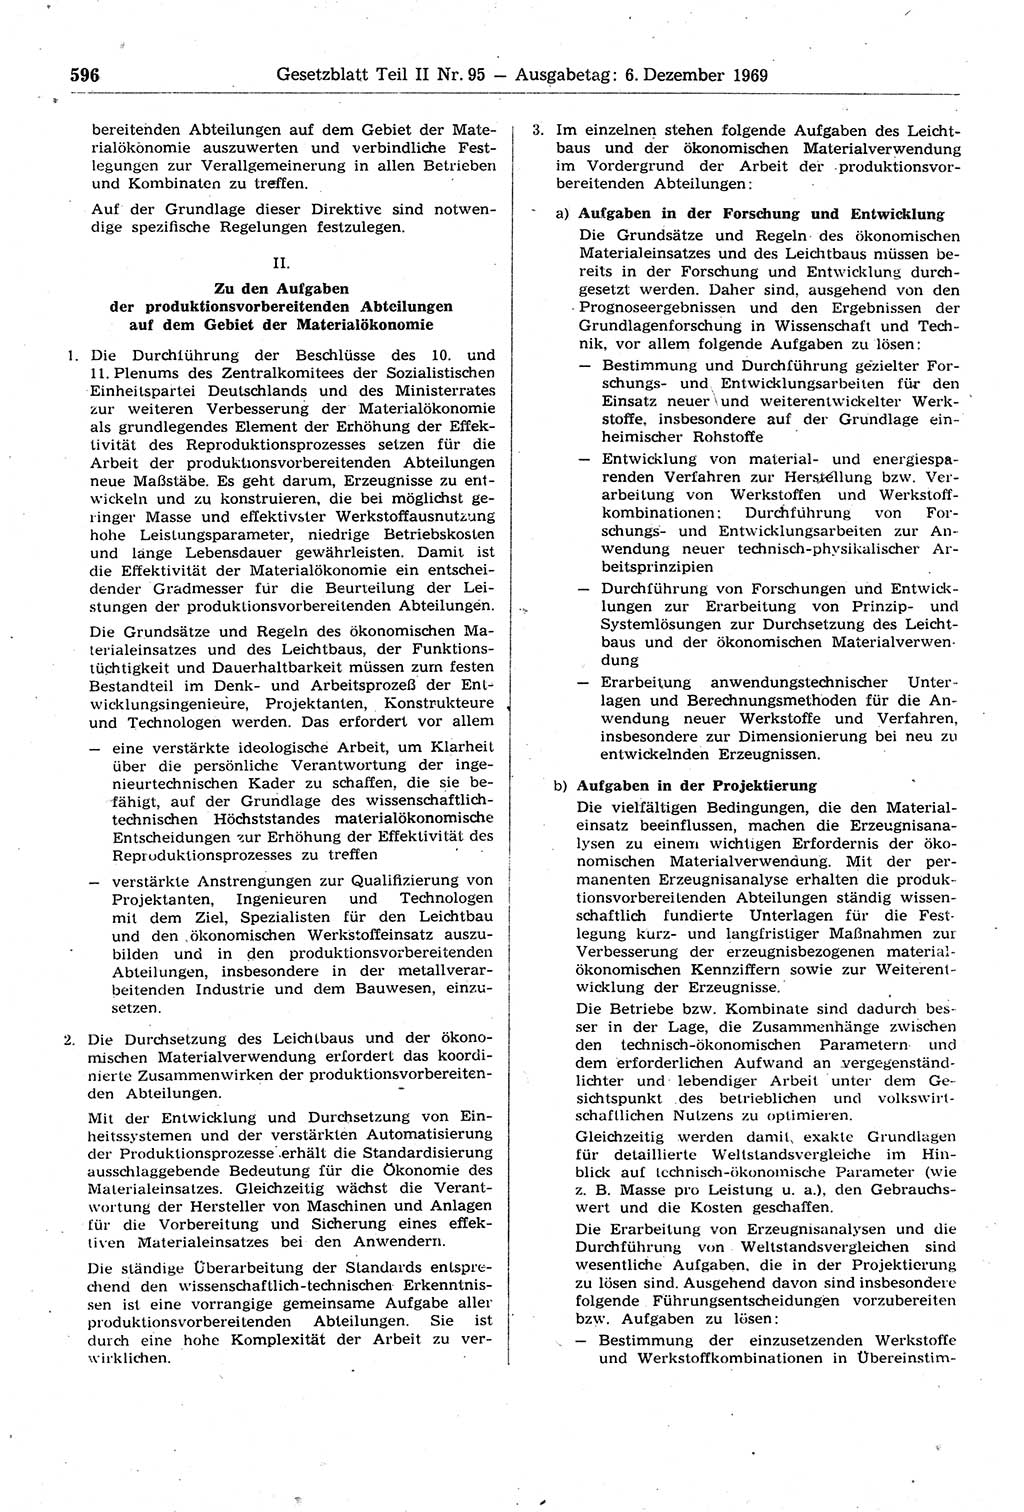 Gesetzblatt (GBl.) der Deutschen Demokratischen Republik (DDR) Teil ⅠⅠ 1969, Seite 596 (GBl. DDR ⅠⅠ 1969, S. 596)